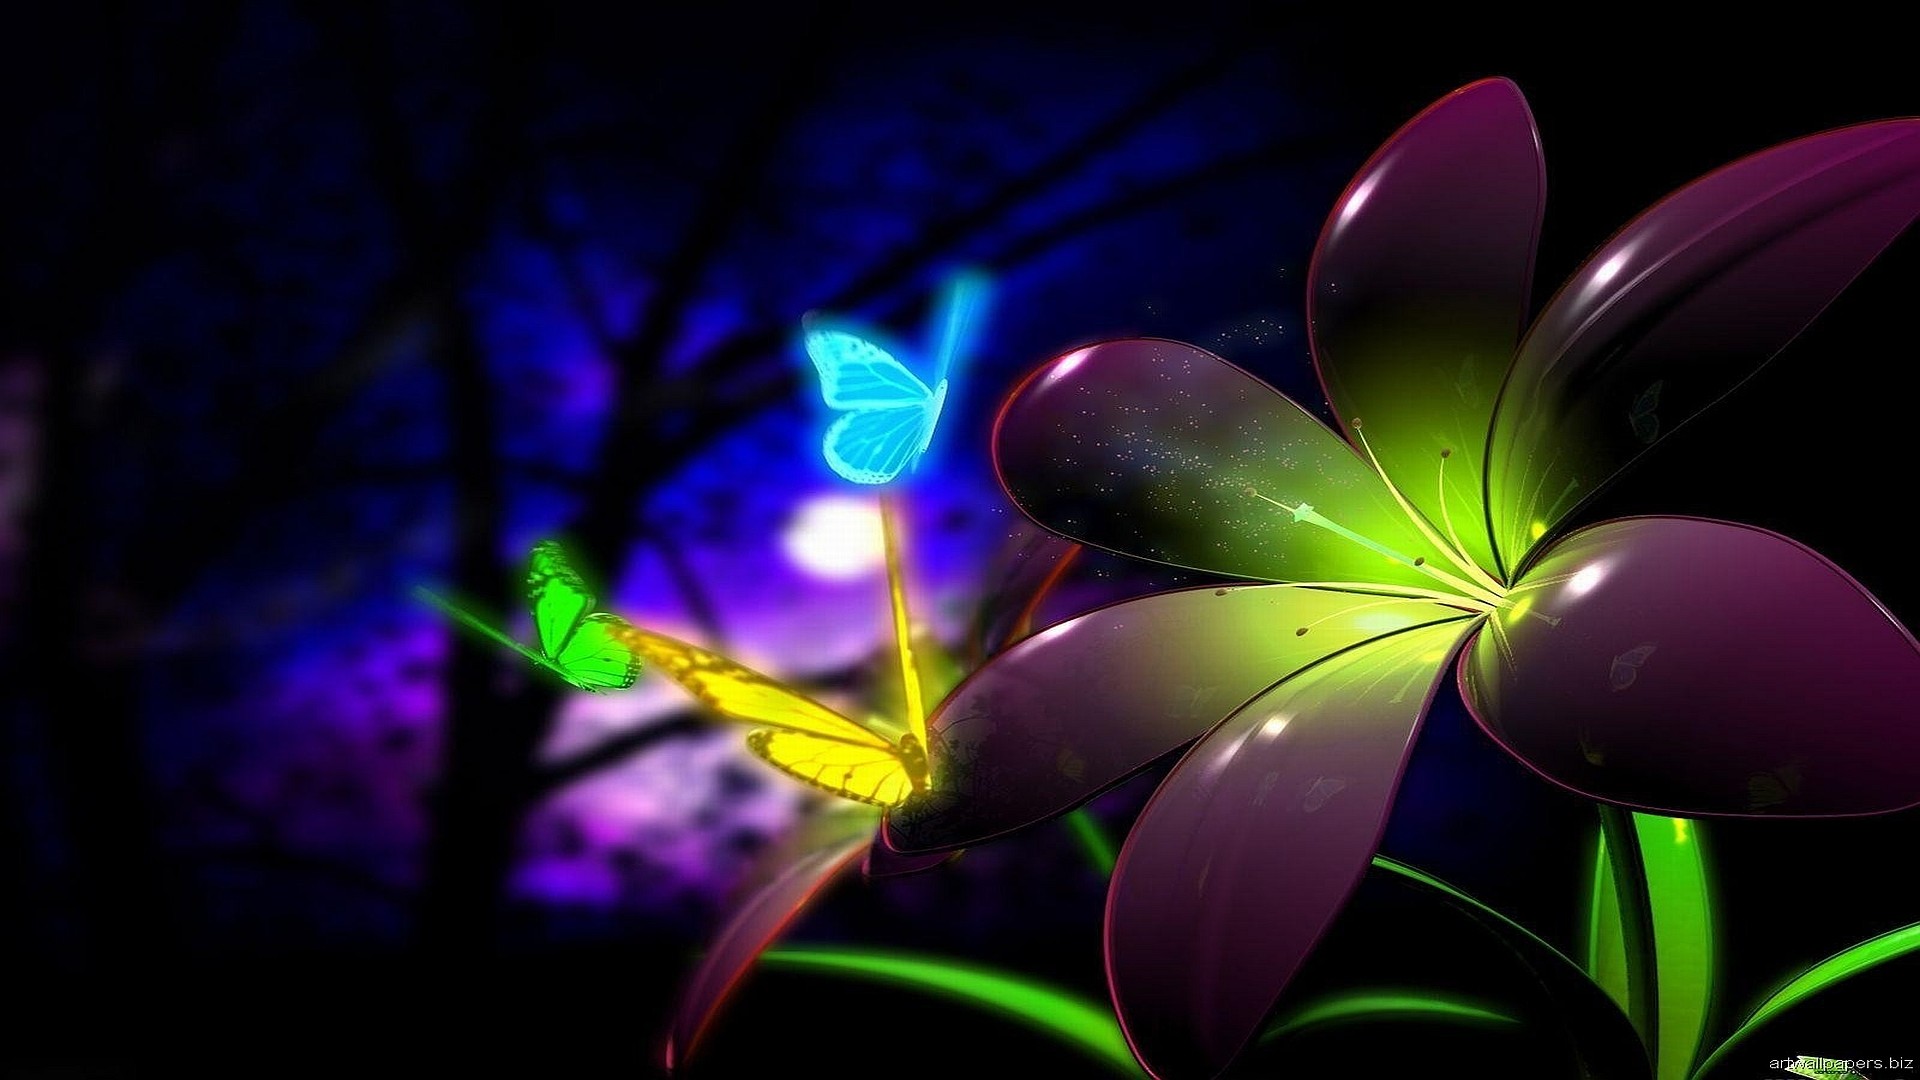 1920x1080 Purple flower Digital Art HD desktop wallpaper, Butterfly wallpaper,  Blossom wallpaper - Digital Art no.